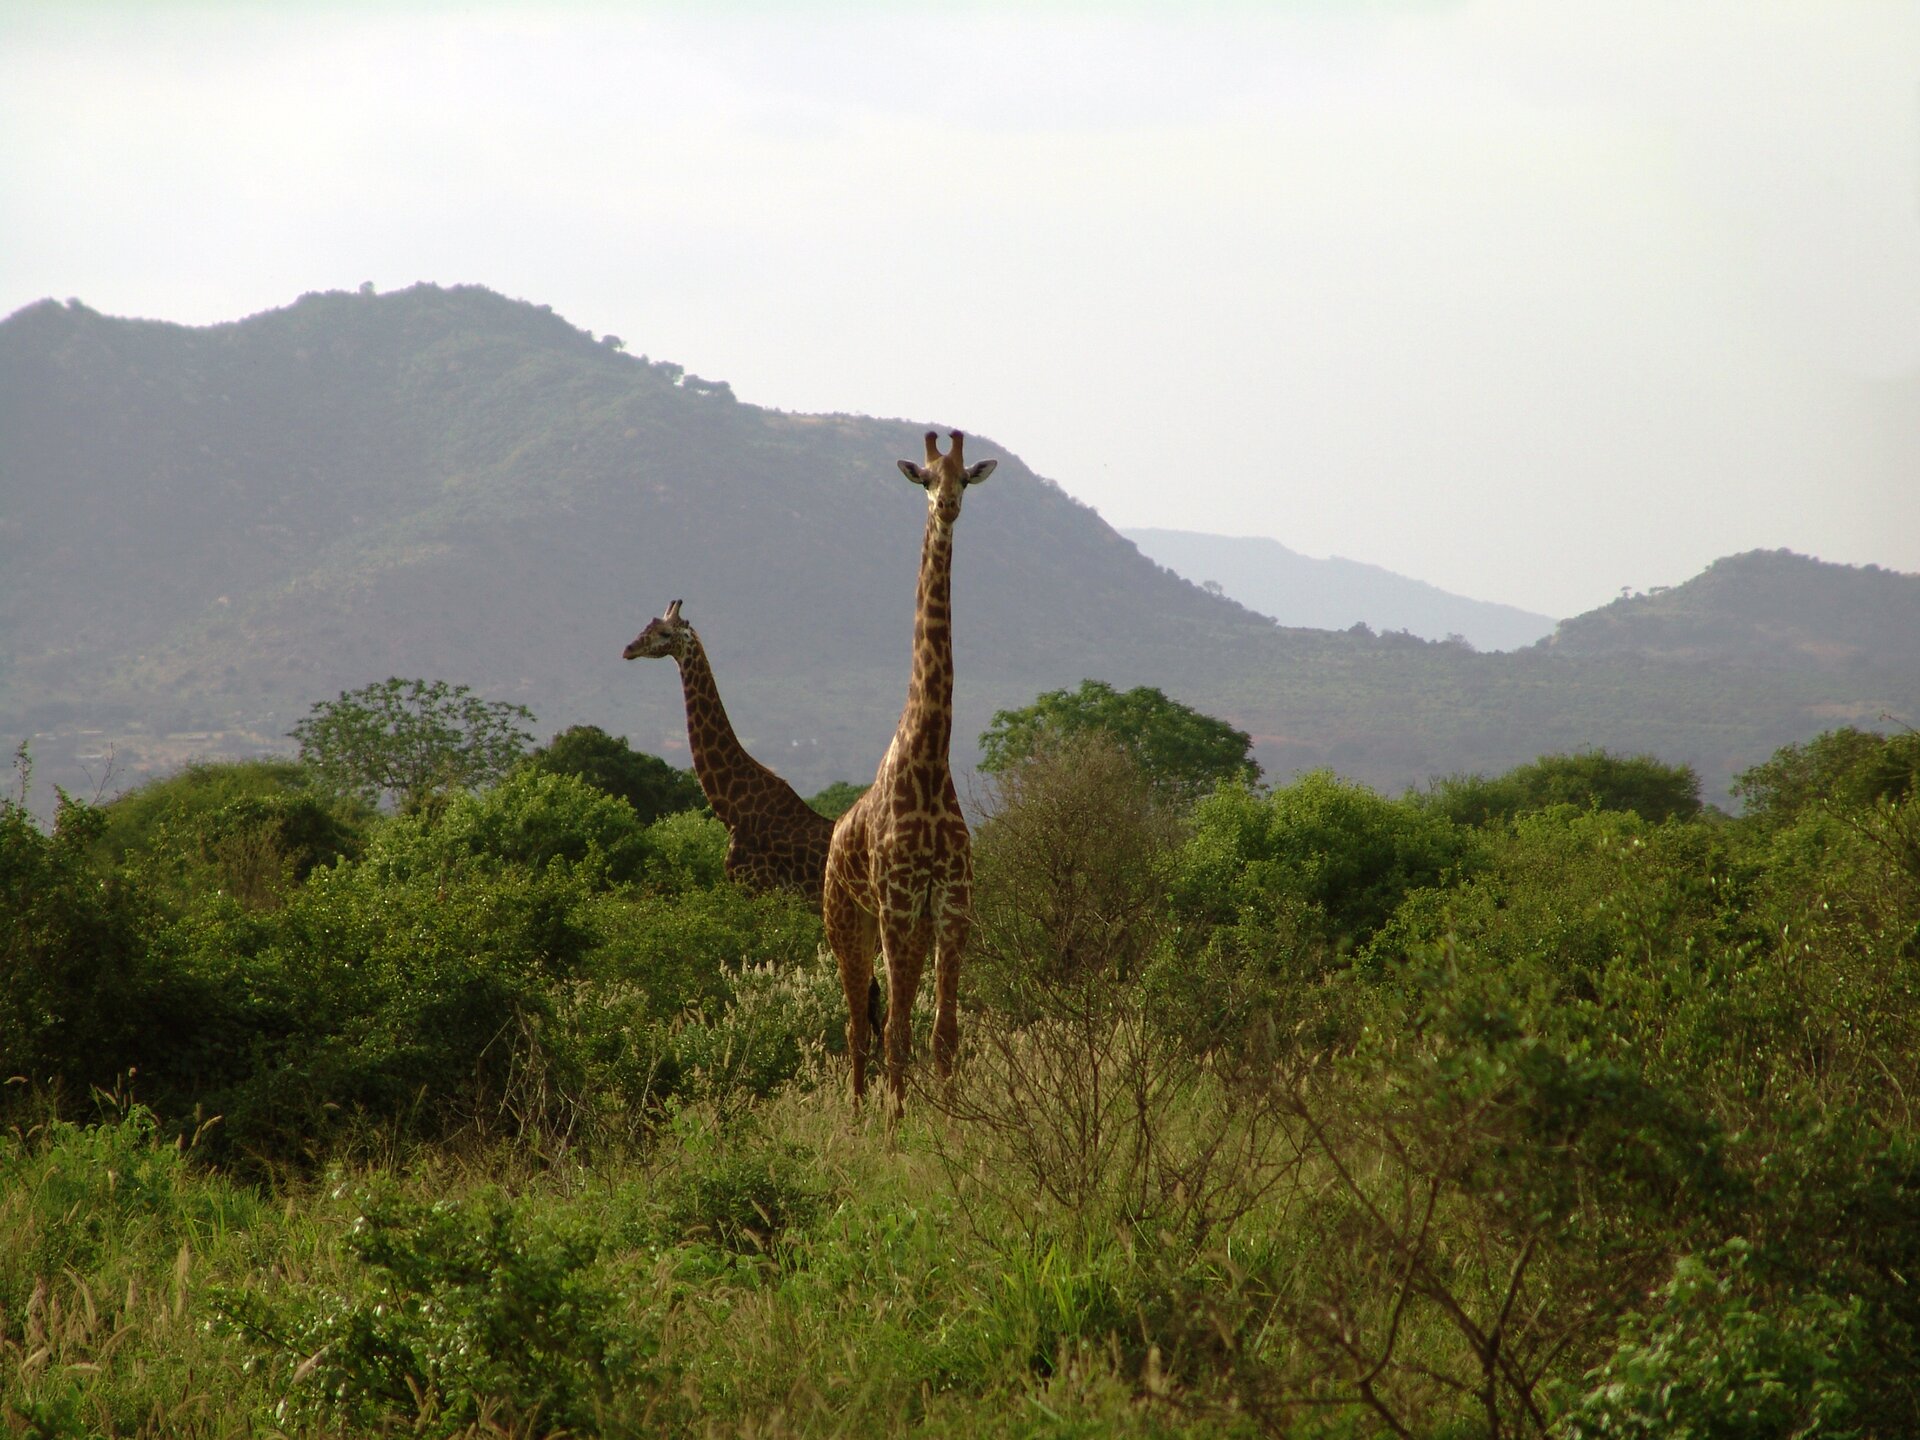 Fotografia przedstawia dwie żyrafy. Jedna stoi przodem, druga bokiem w lewo. Ich ciało na wysokich nogach wznosi się ponad zaroślami . Na bardzo długiej szyi znajduje się mała głowa z wielkimi oczami, uszami na boki i krótkimi, sterczącymi do góry rożkami. W tle góry.